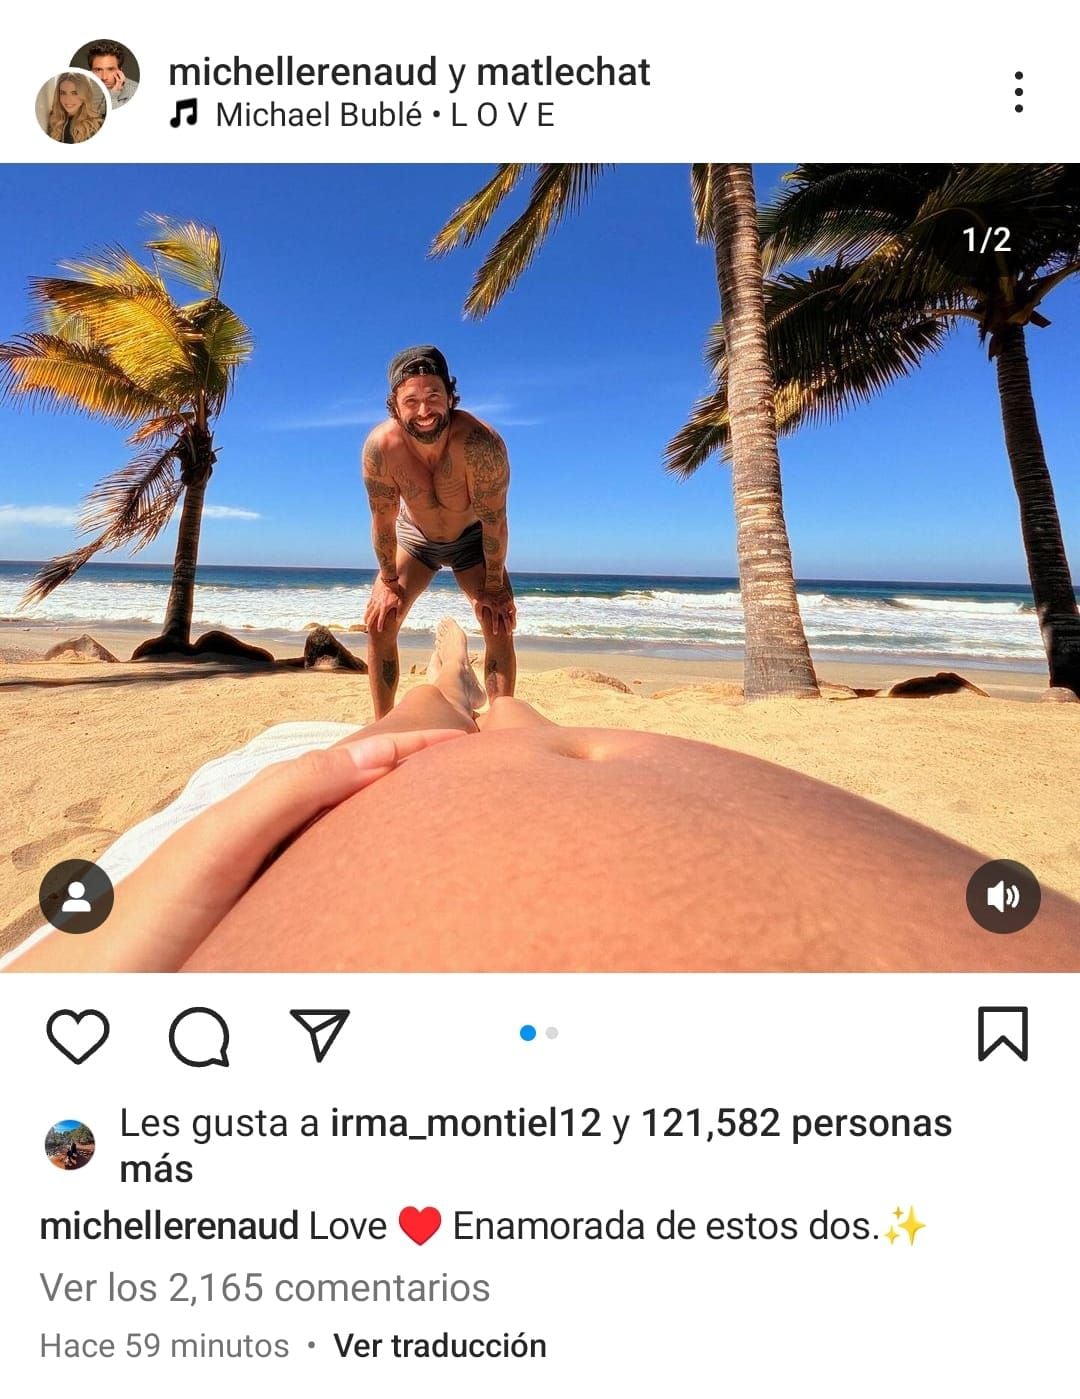 La actriz confirma su embarazo con esta publicación en Instagram.